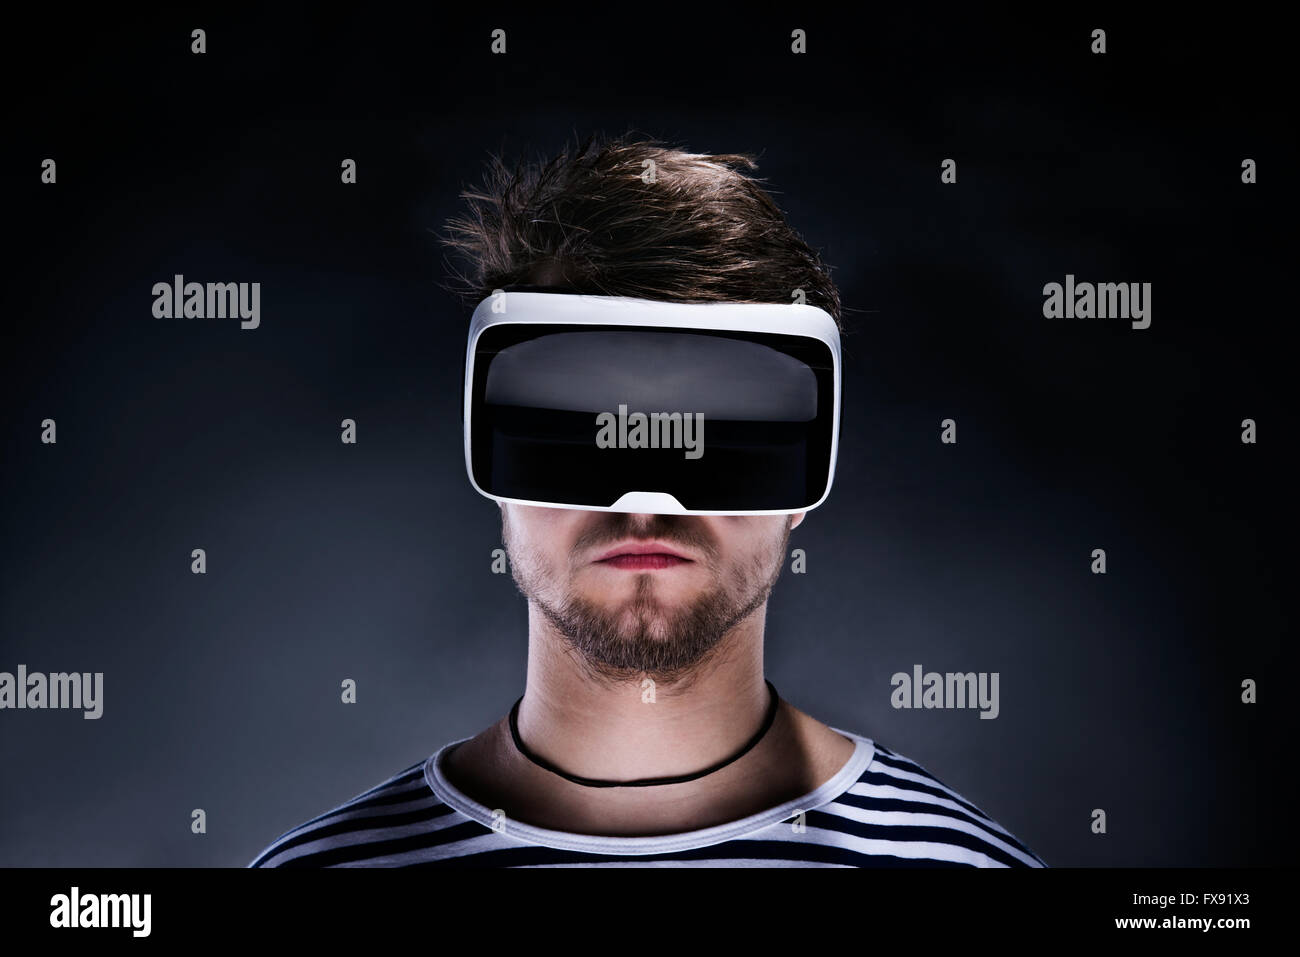 El hombre llevaba gafas de realidad virtual. Foto de estudio, black backgrou Foto de stock